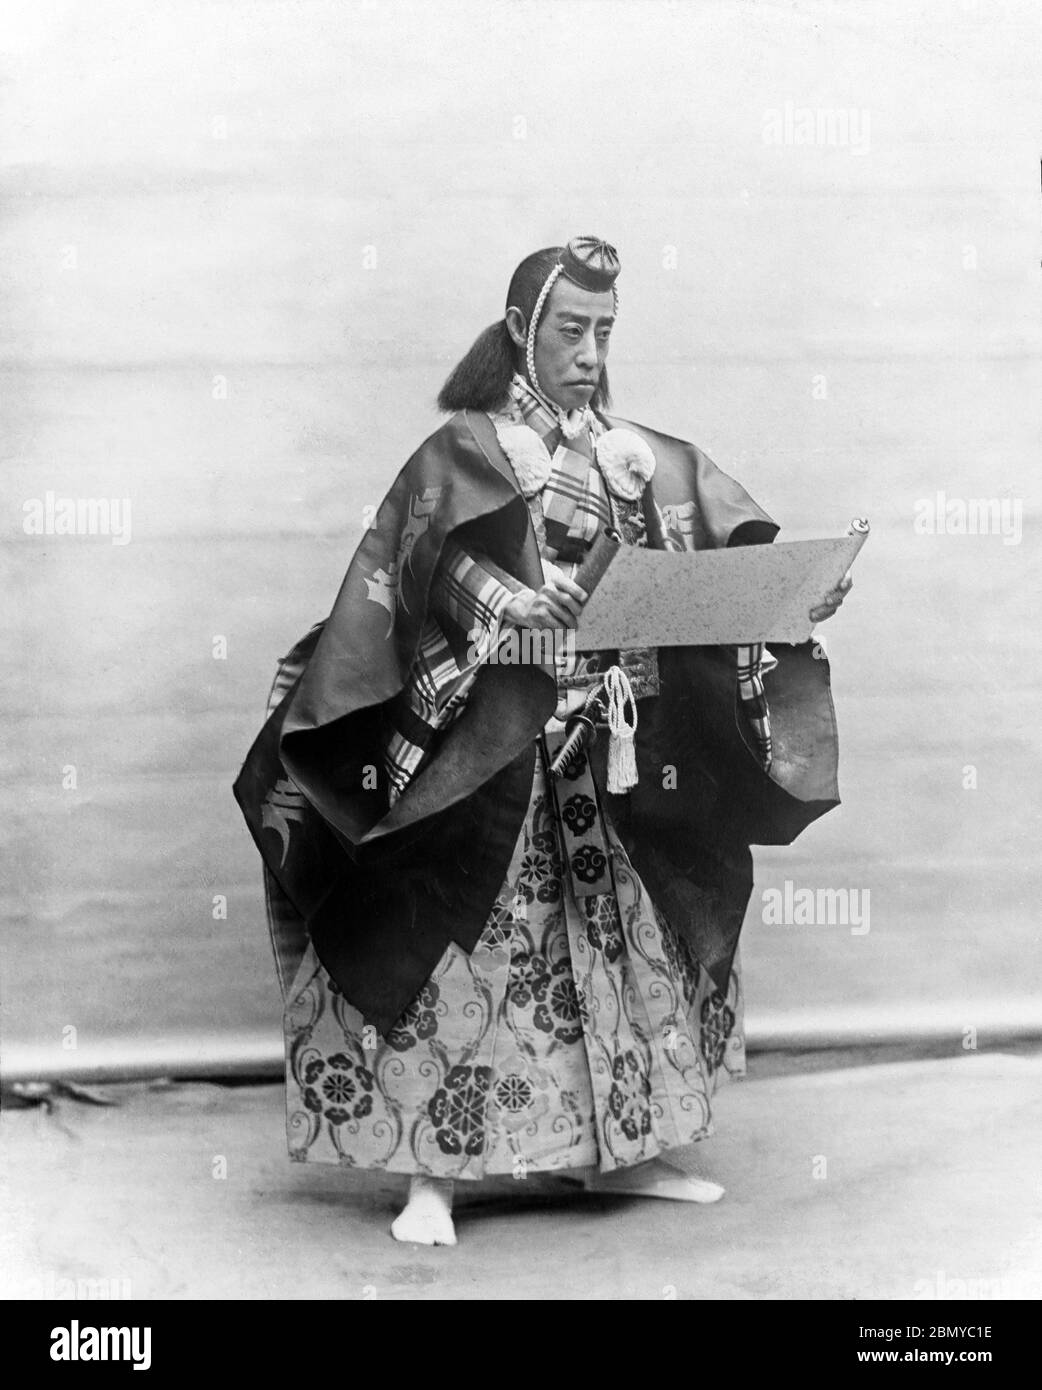 [ 1890er Jahre Japan - Kabuki Darsteller Ichikawa Danjuro IX ] - Japanischer Kabuki Darsteller Ichikawa Danjuro IX (九代目 市川 團十郎, 1838-1903). Danjuro war einer der erfolgreichsten und berühmtesten Kabuki-Schauspieler der Meiji-Zeit (1868–1912). Aus einer Serie von Glasdias, die vom schottischen Fotografen George Washington Wilson (1823–1893) veröffentlicht (aber nicht fotografiert) wurden. Wilsons Firma war einer der größten Verleger von Fotodrucken in der Welt. 19. Jahrhundert Vintage Glas Rutsche. Stockfoto